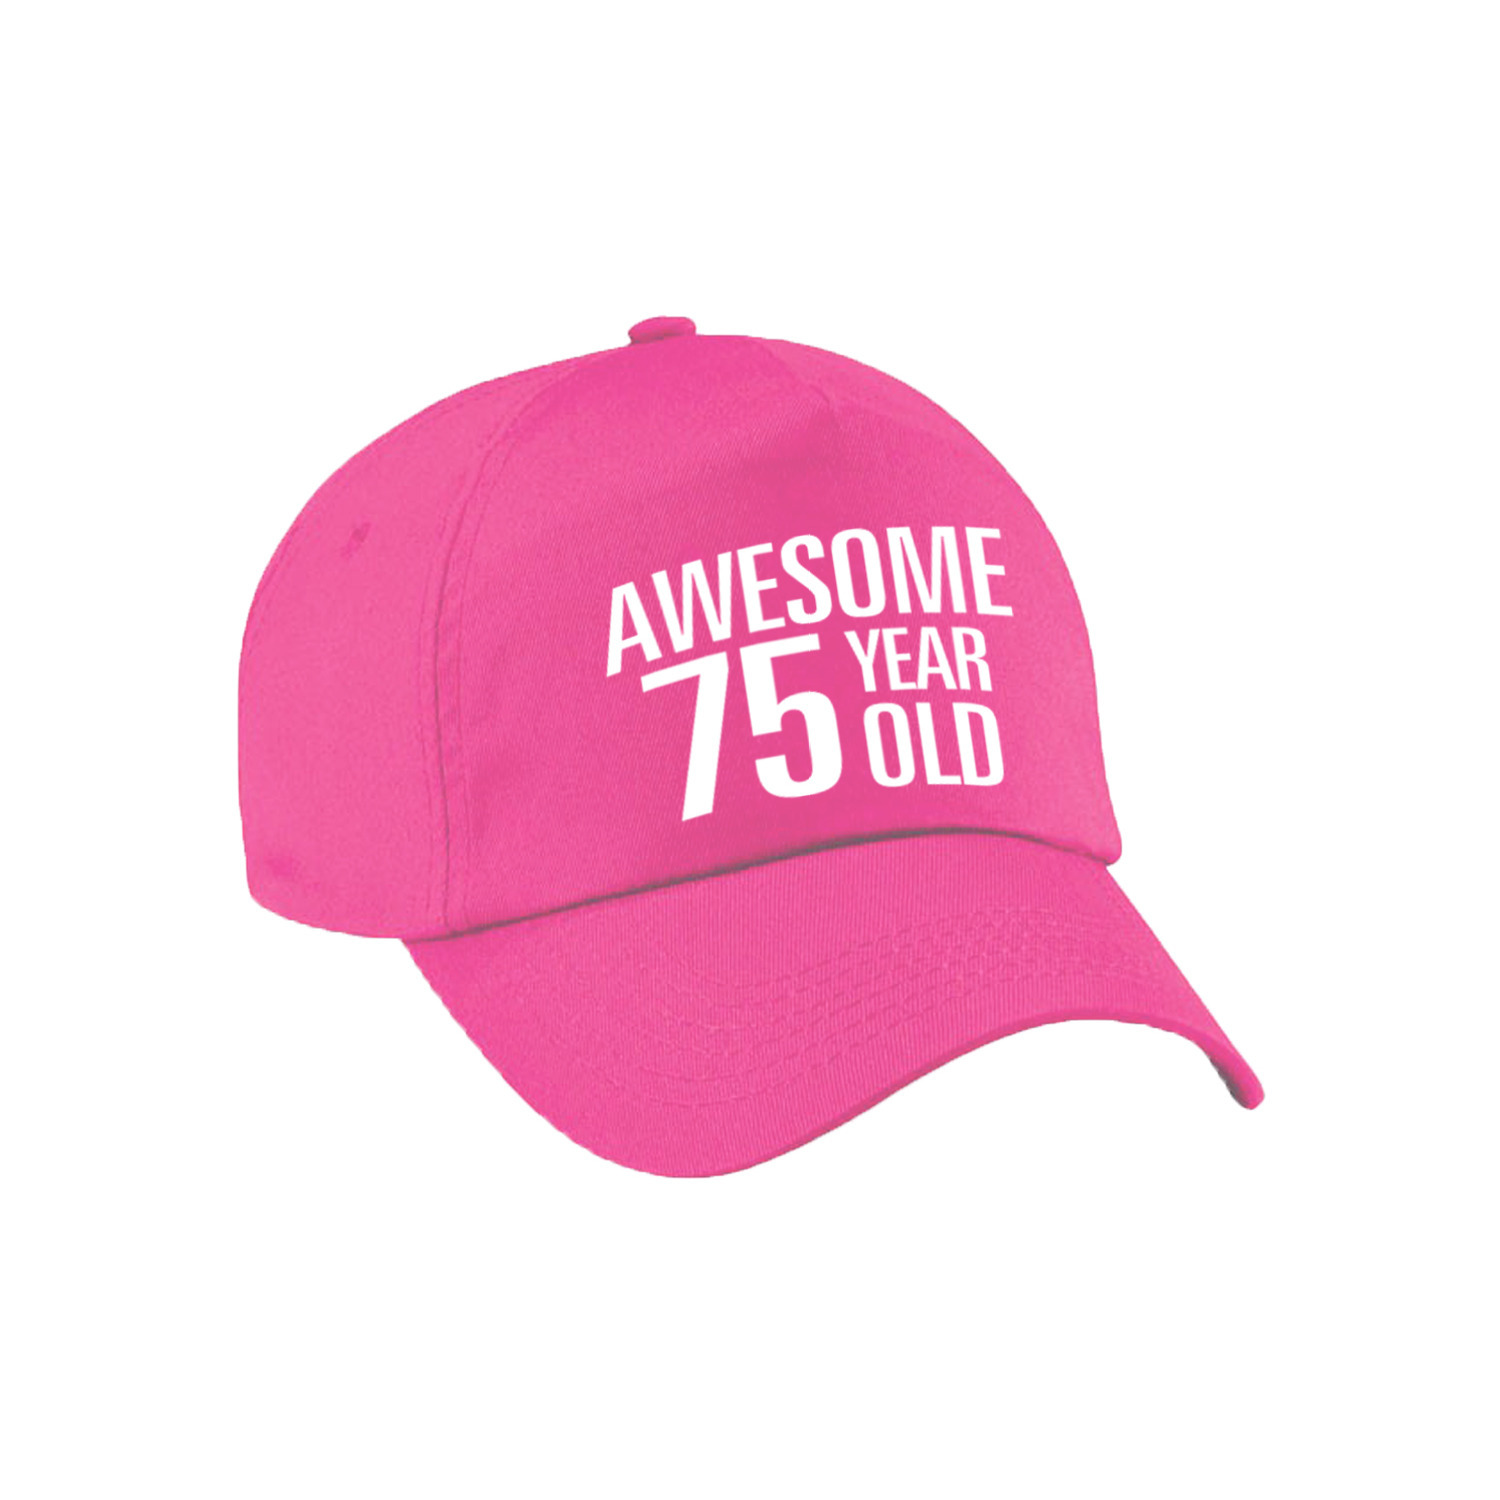 Awesome 75 year old verjaardag pet / cap roze voor dames en heren